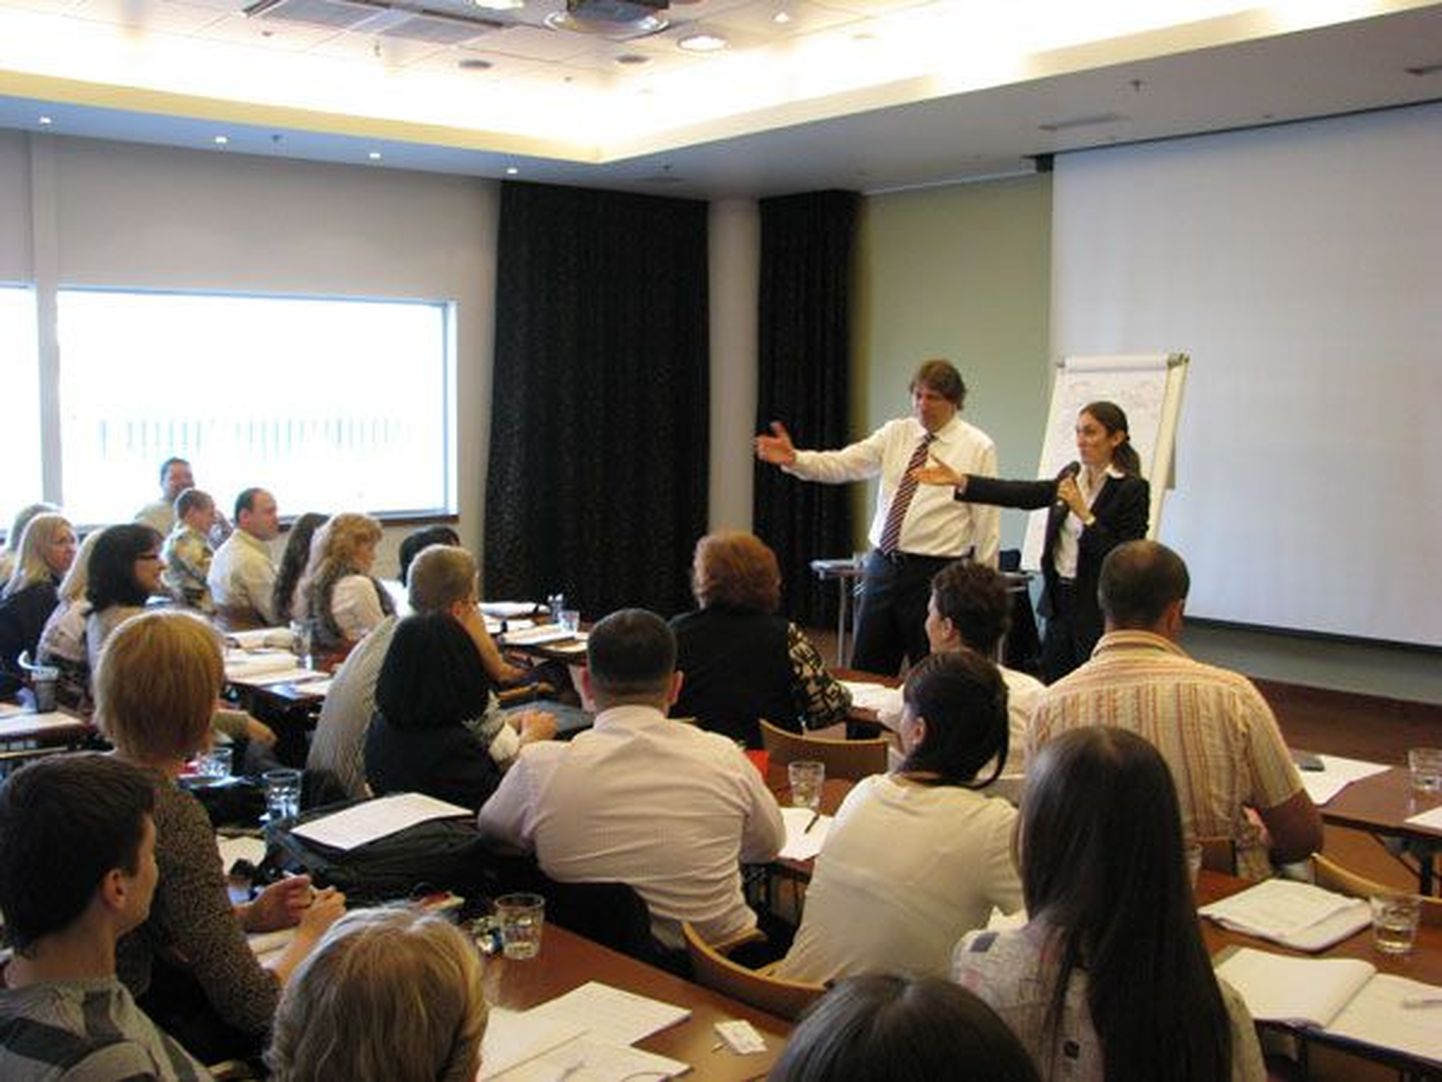 Бизнес-семинары «Системы эффективных продаж» и «Безупречное обслуживание клиентов», которые провел в Таллинне бизнес-тренер Майкл Бенг, собрали много заинтересованных слушателей.